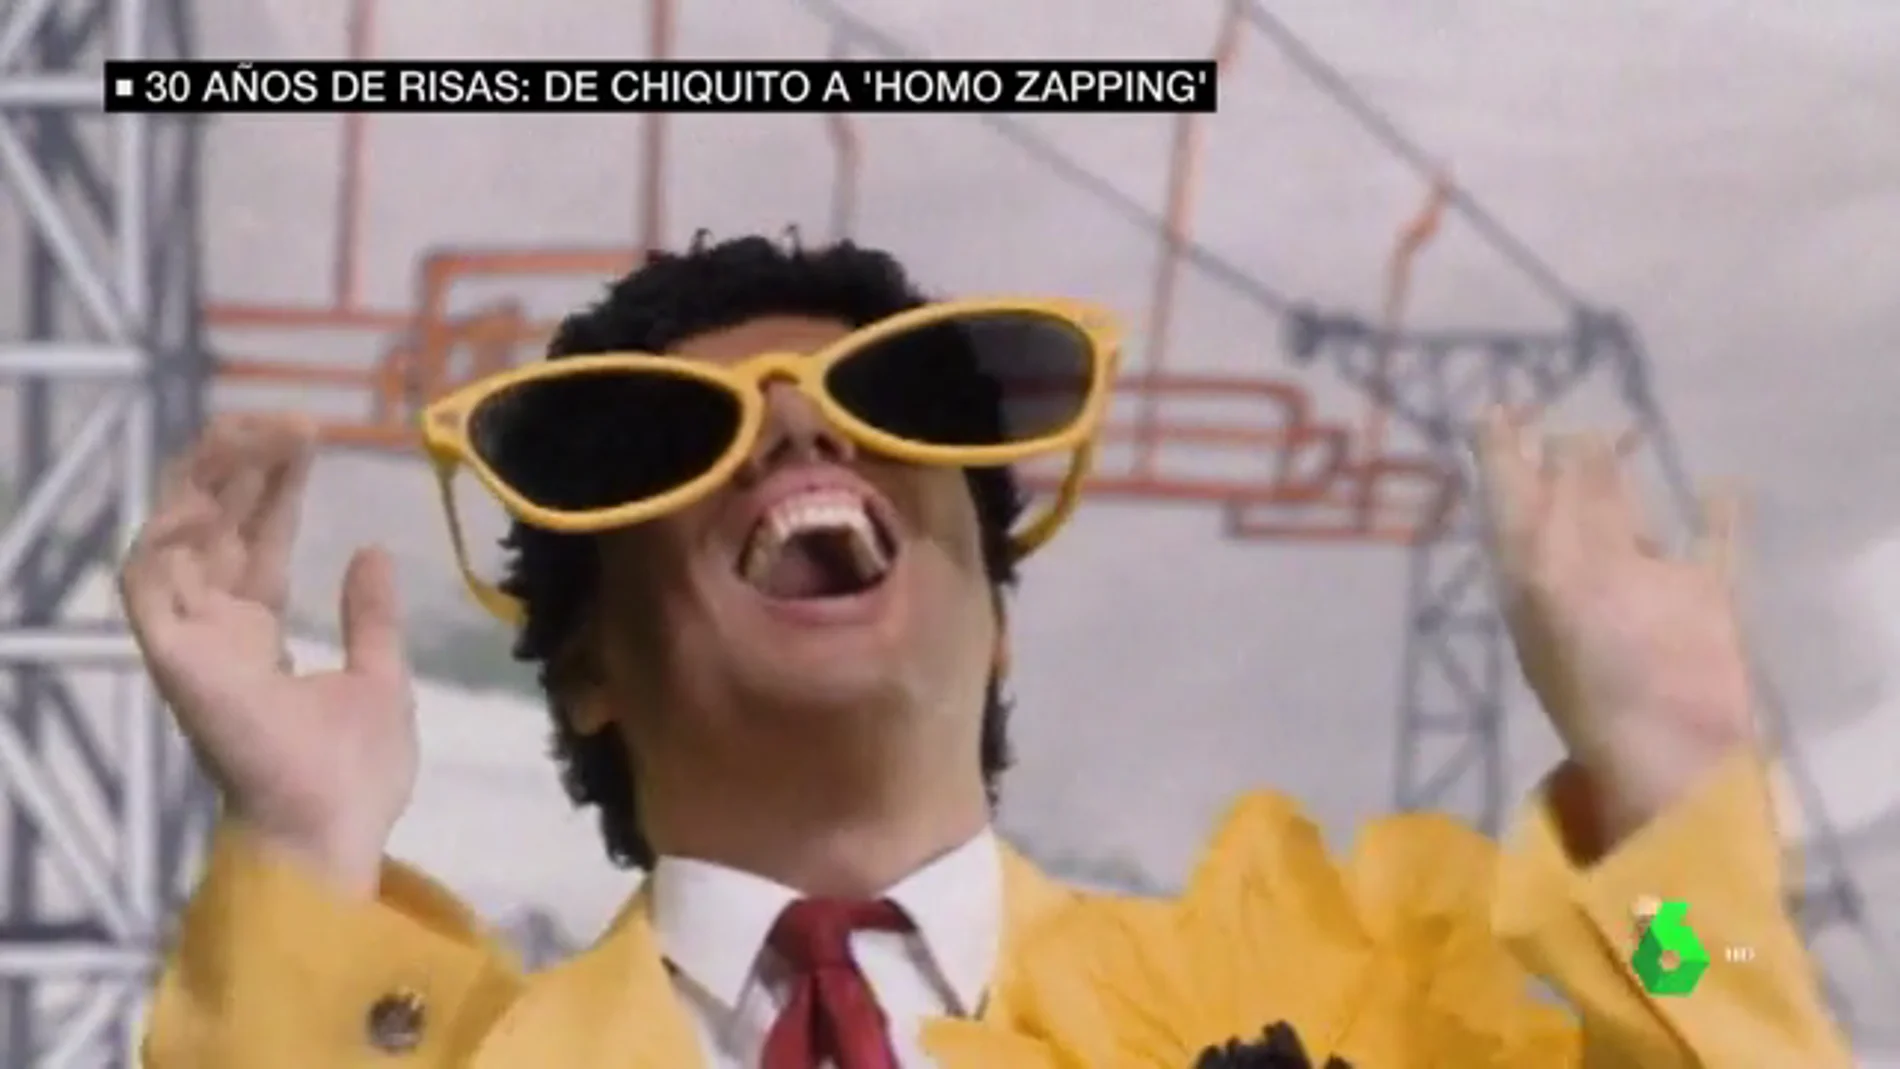 De 'Al ataque' a Chiquito de la Calzada y 'Homo Zapping': 30 años de risas en Antena 3